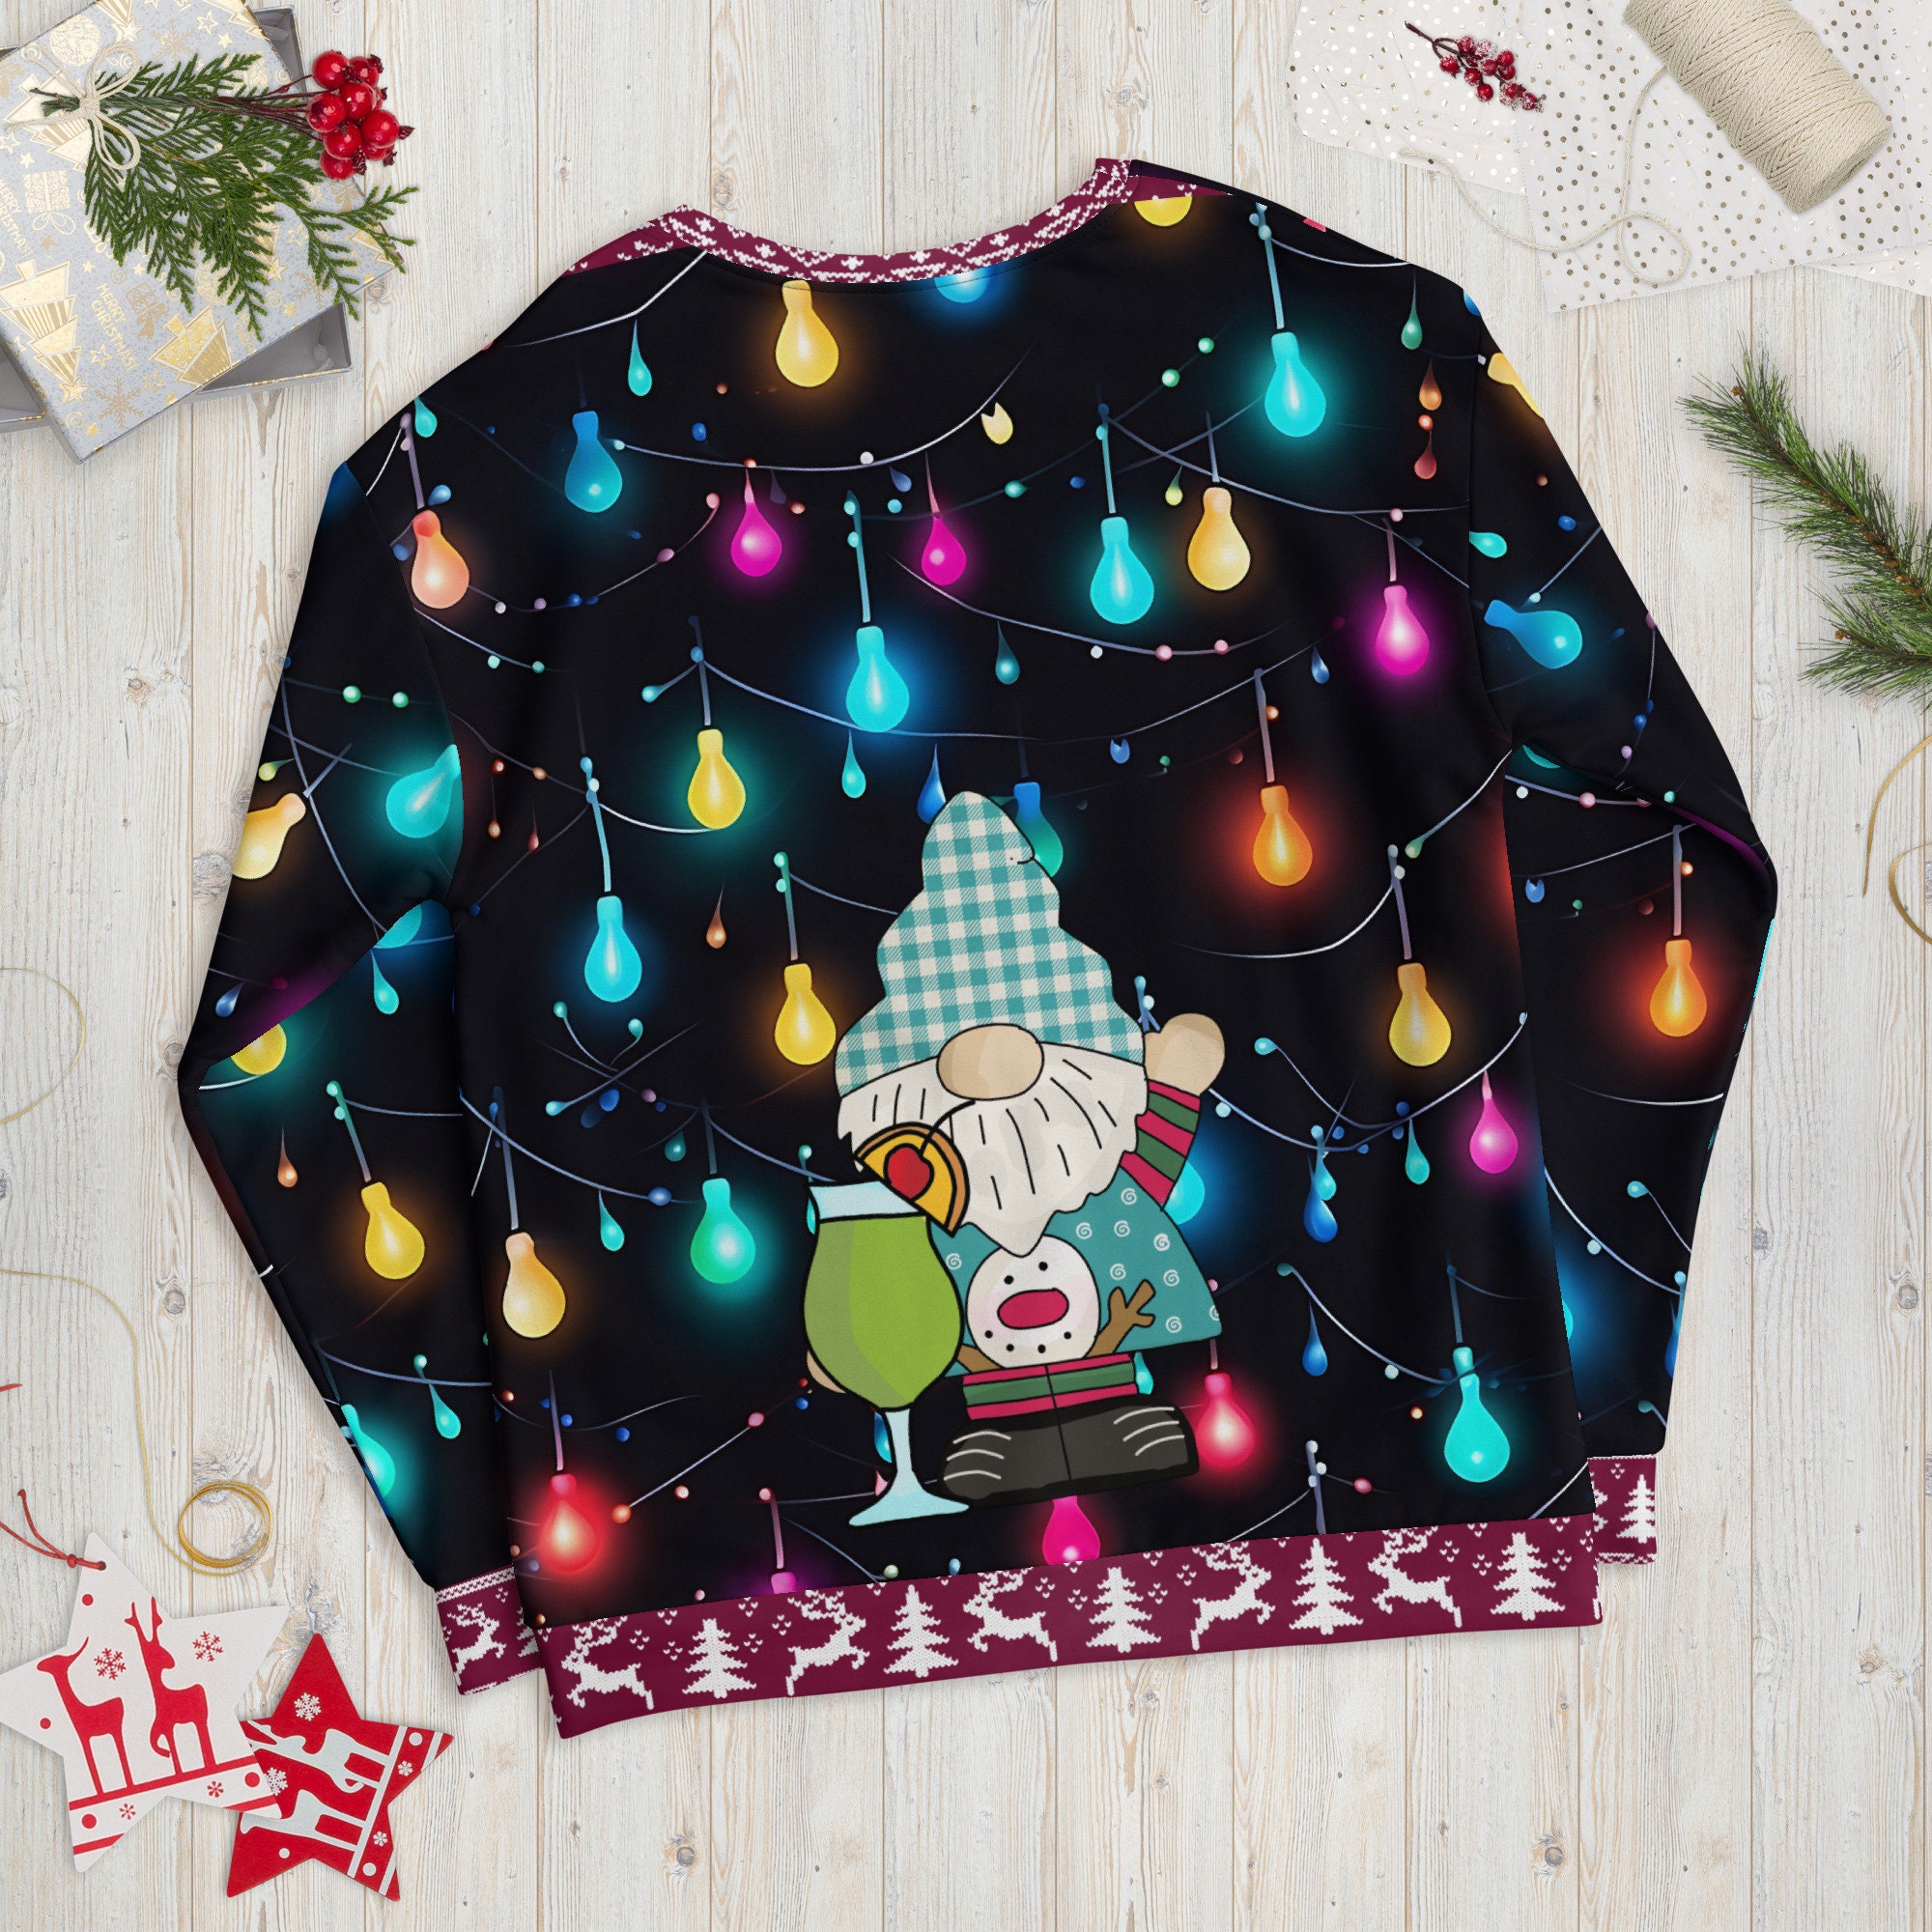 Discover Funny and Ugly Christmas Sweatshirt, Ugly Christmas Sweater, funny Christmas gift, psychedelic Christmas